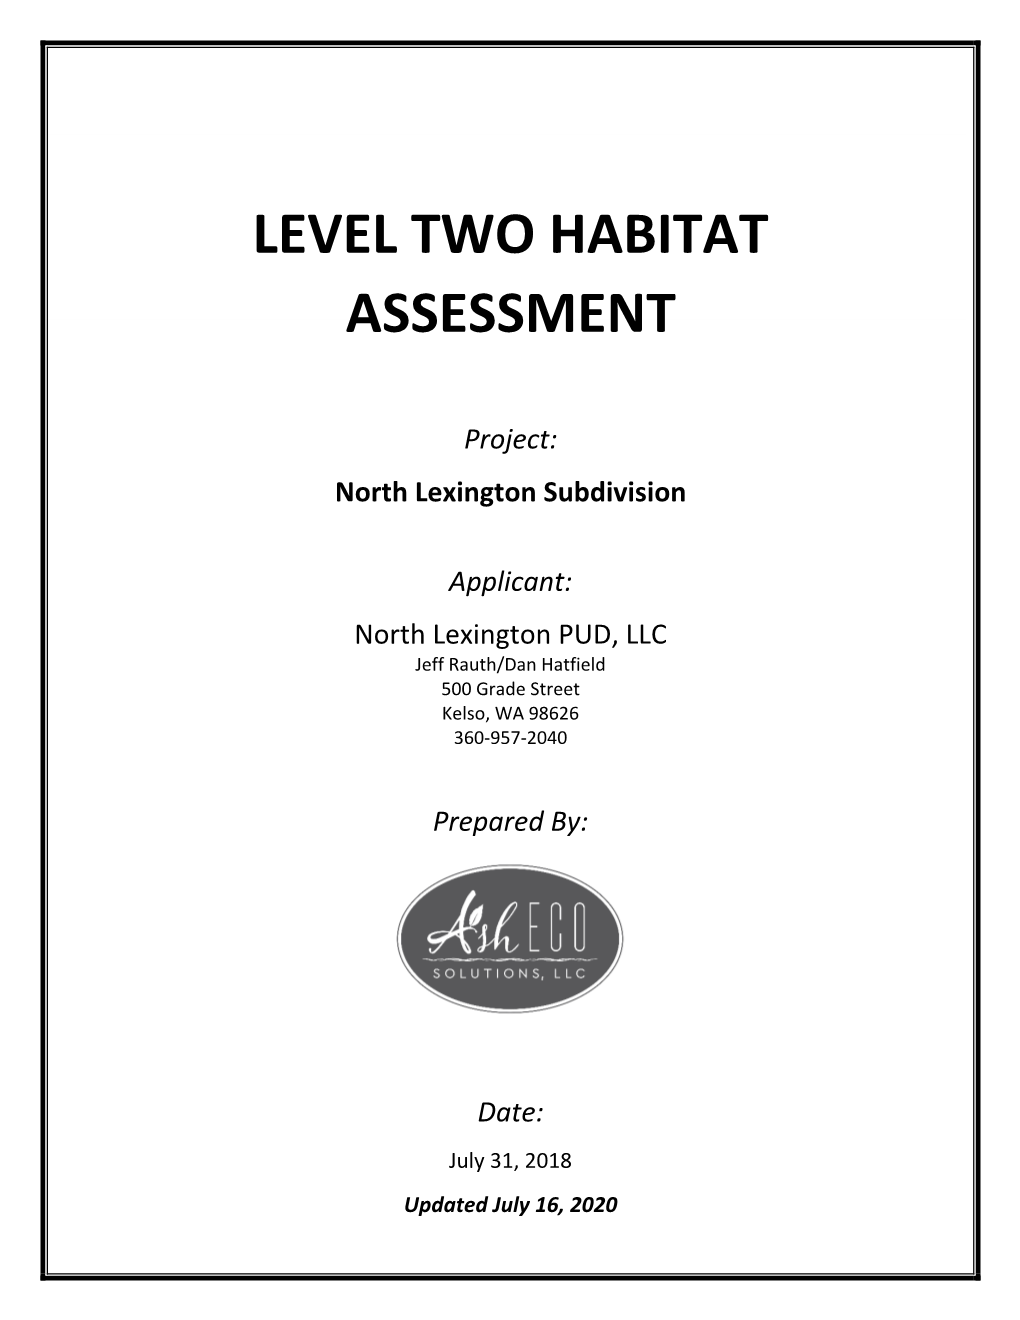 Level Two Habitat Assessment